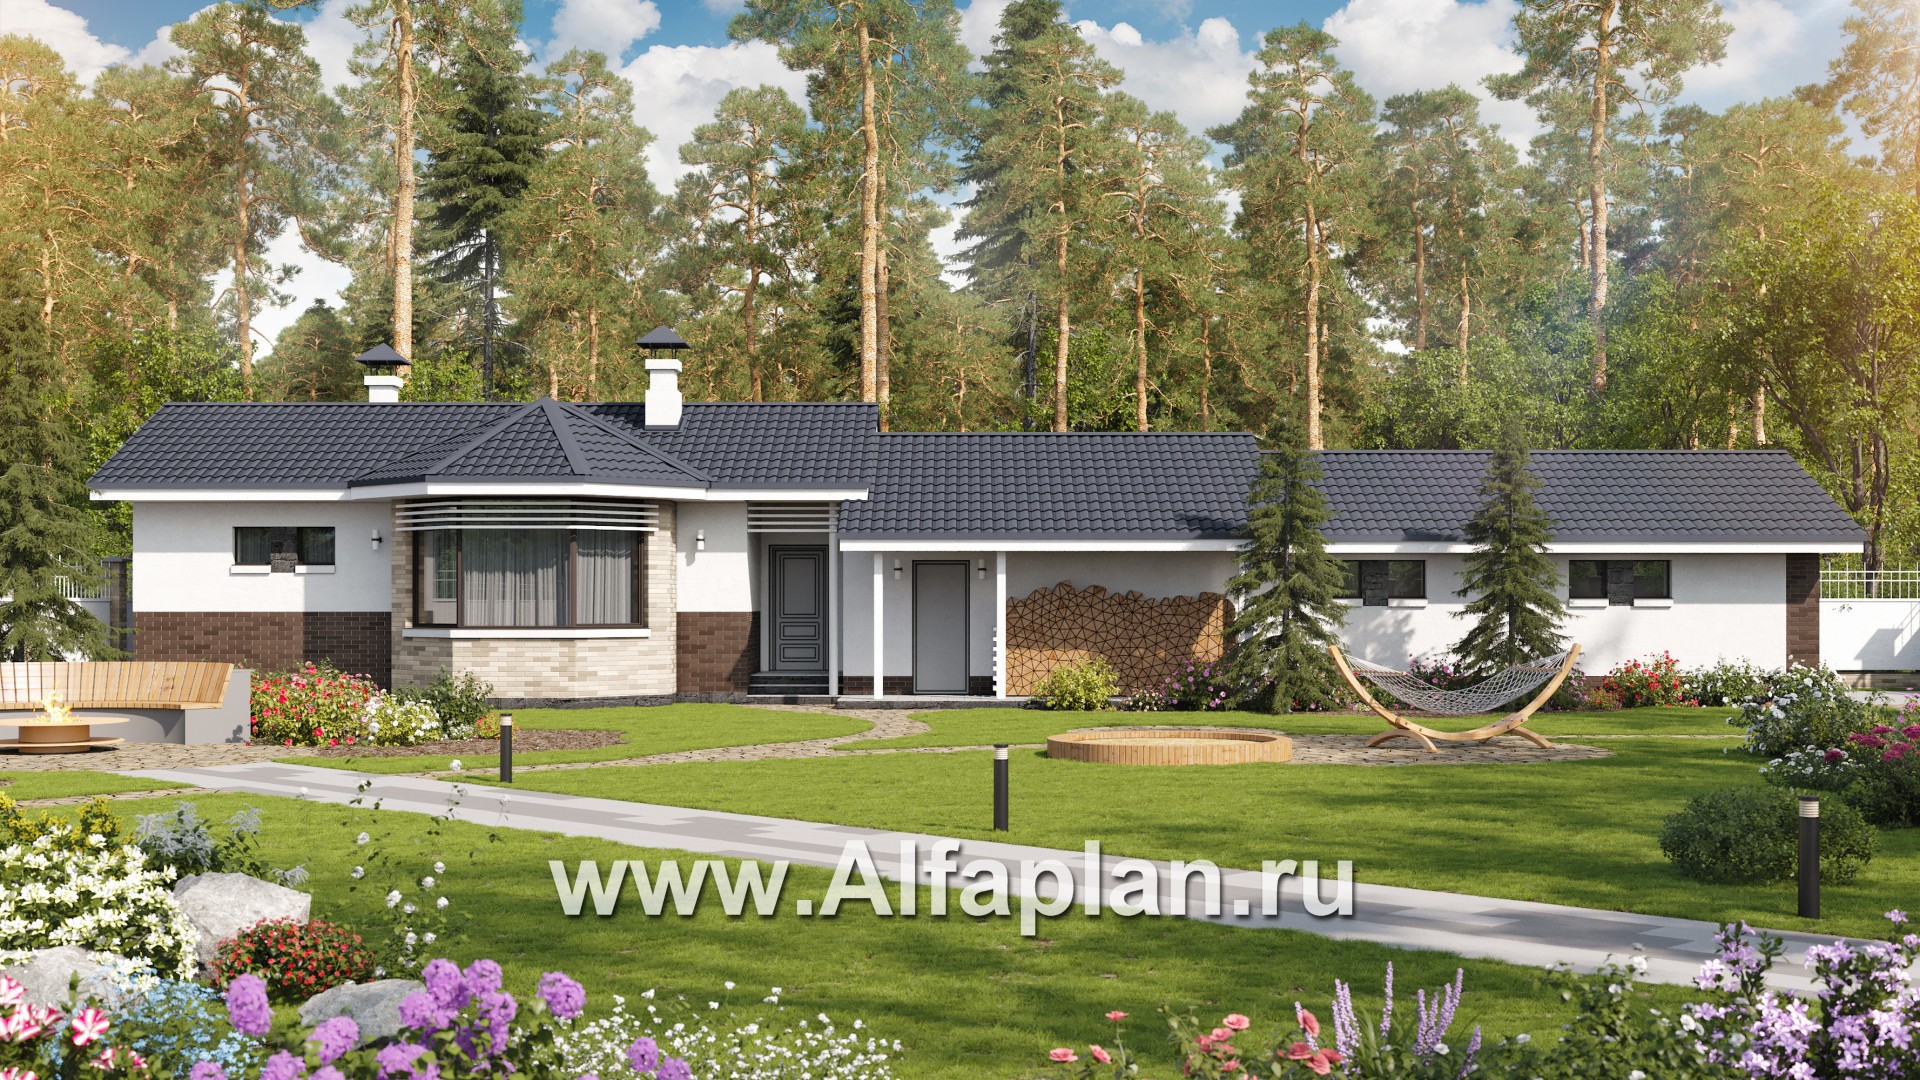 Проекты домов Альфаплан - Баня 245С с длинным гаражом 218Р - основное изображение